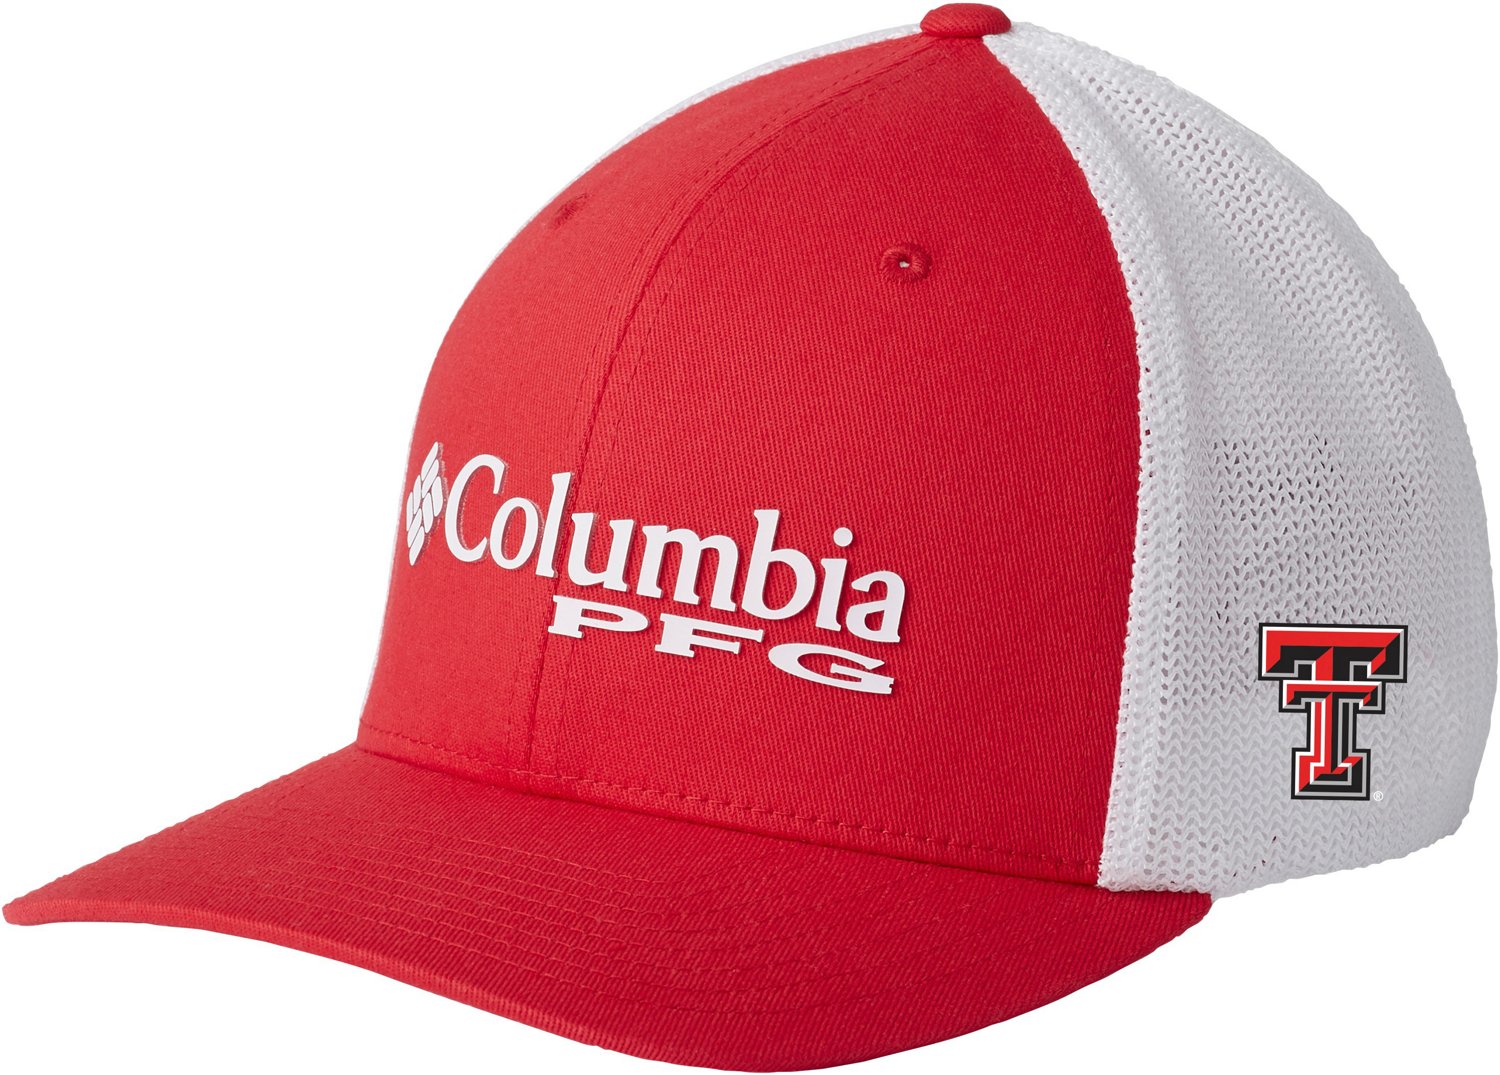 Texas Tech Red Raiders 2T PFG Mesh Red Columbia Flex Hat